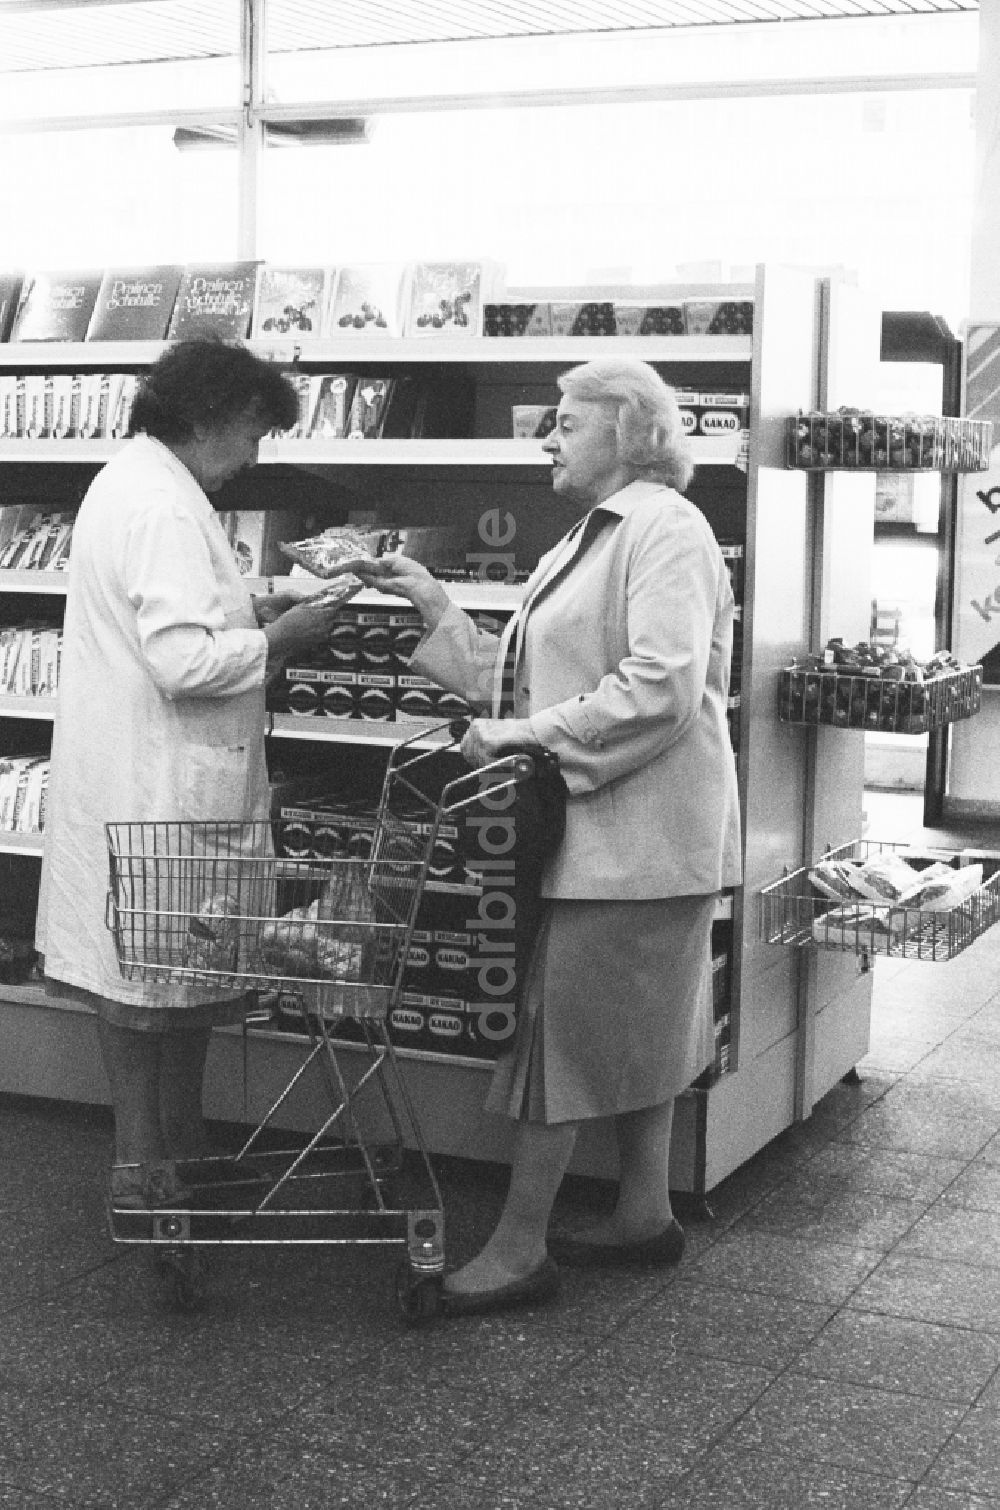 DDR-Bildarchiv: Berlin - Frau beim Einkaufen in einer Kaufhalle in Berlin, der ehemaligen Hauptstadt der DDR, Deutsche Demokratische Republik